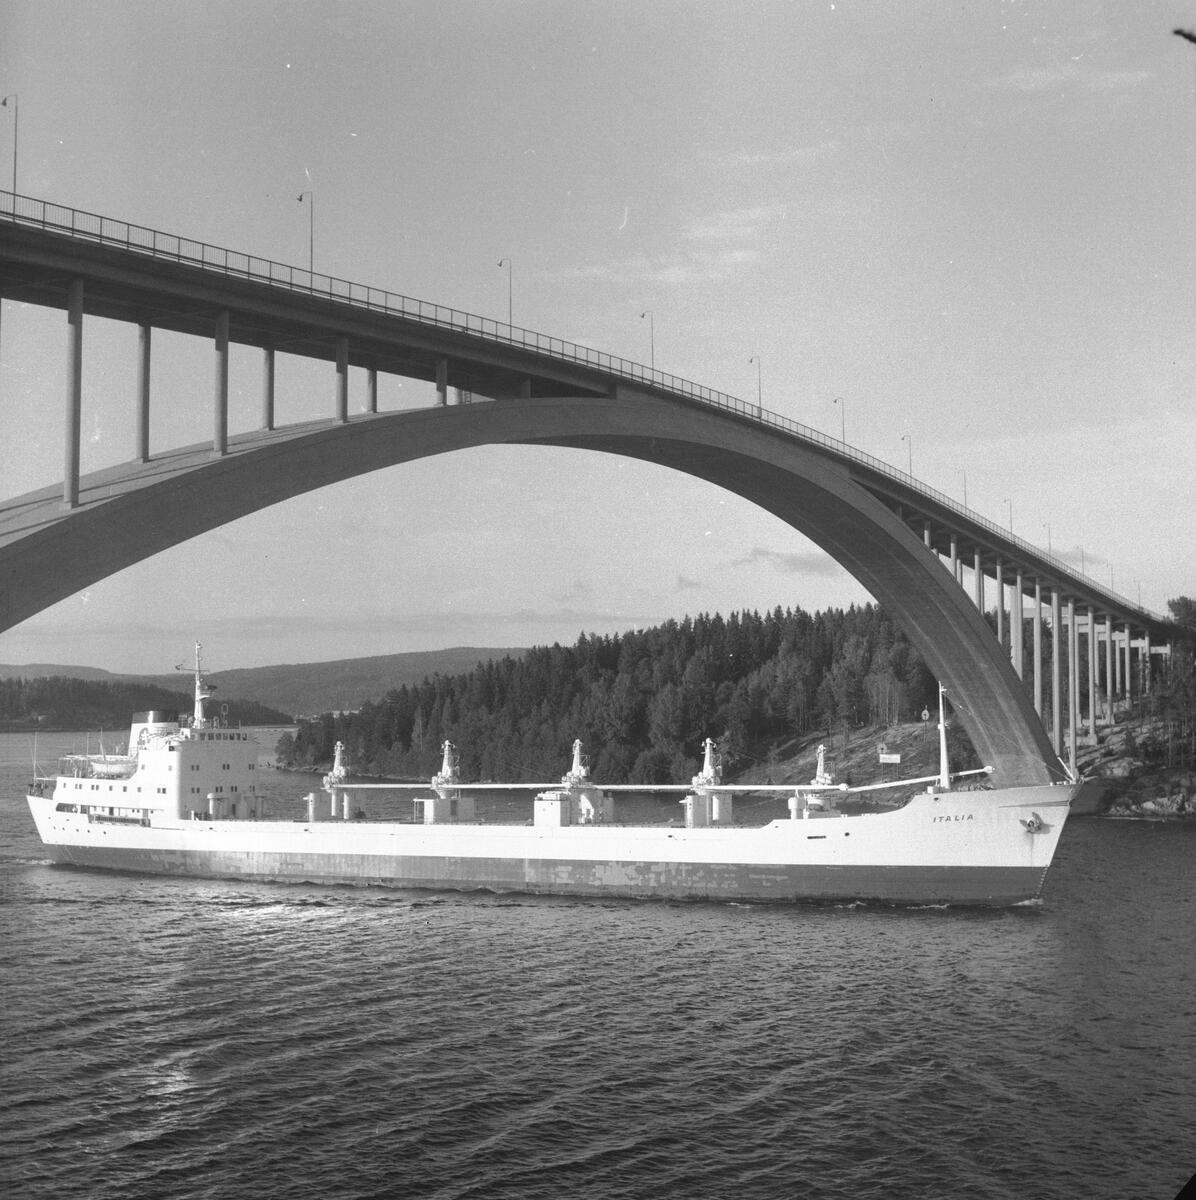 Fartyget Italia vid Sandöbron

